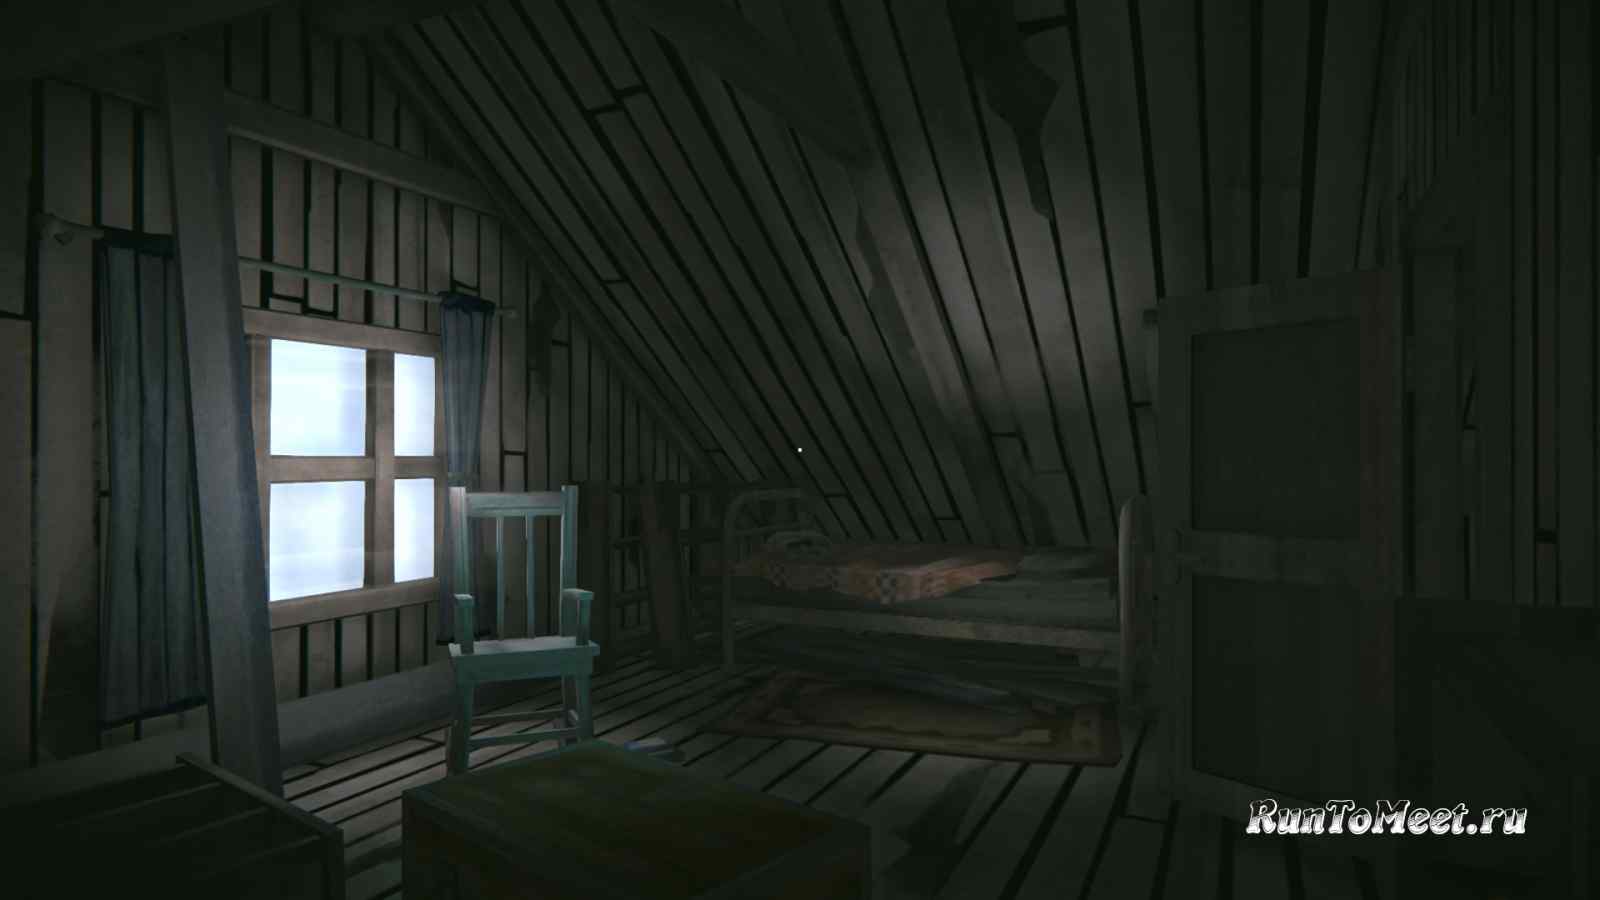 Третья комната на втором этаже Охотничьего дома на РЖД, в игре The long dark